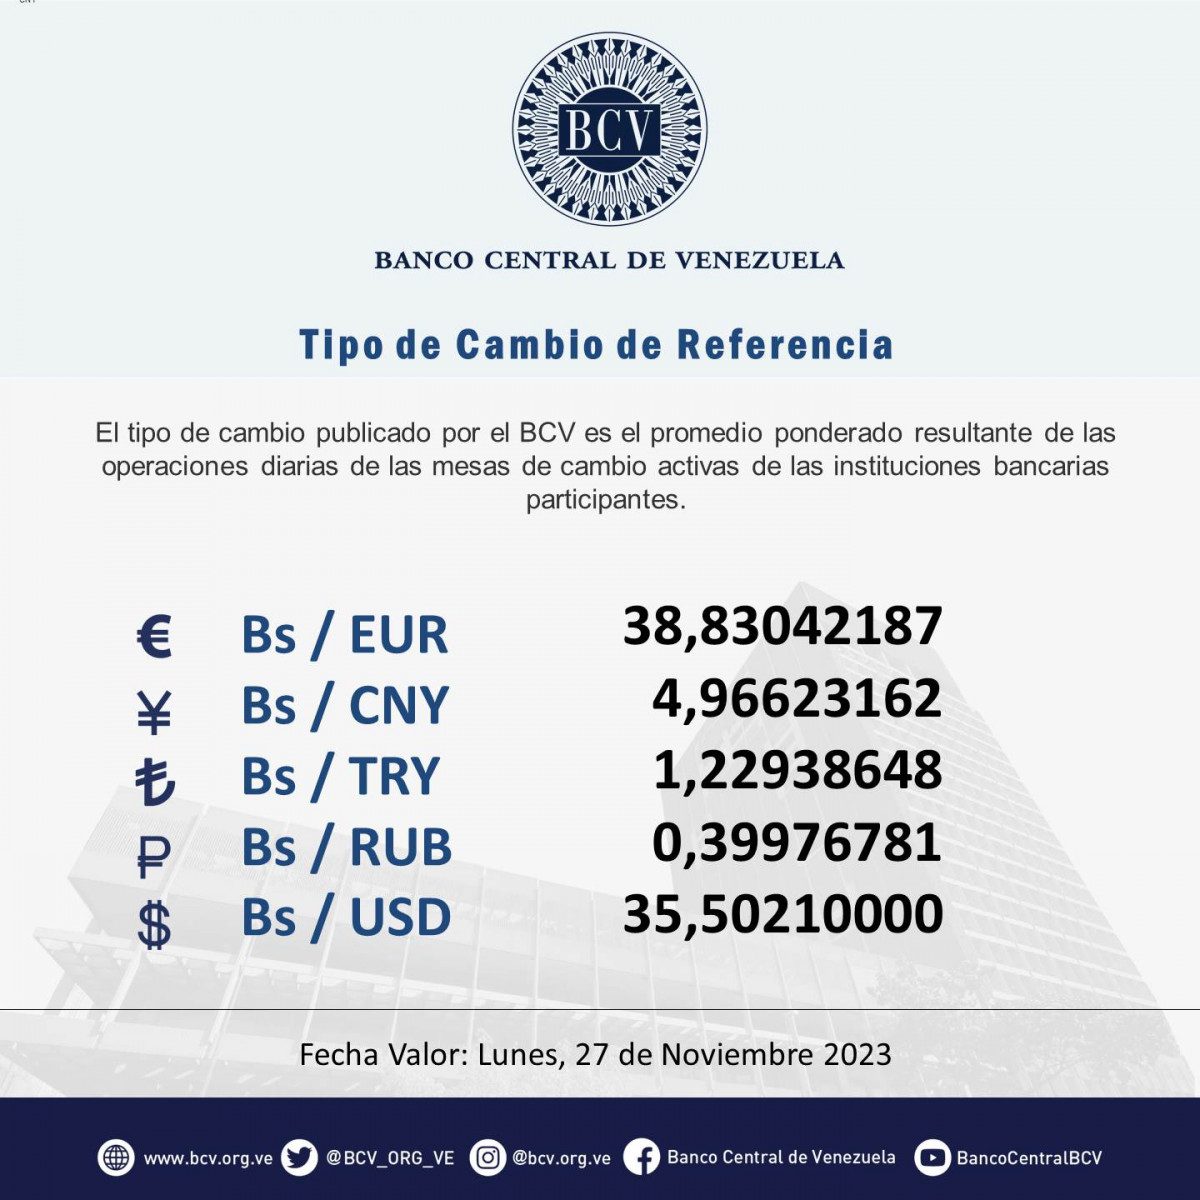 dolartoday en venezuela precio del dolar este sabado 25 de noviembre de 2023 laverdaddemonagas.com bcv1